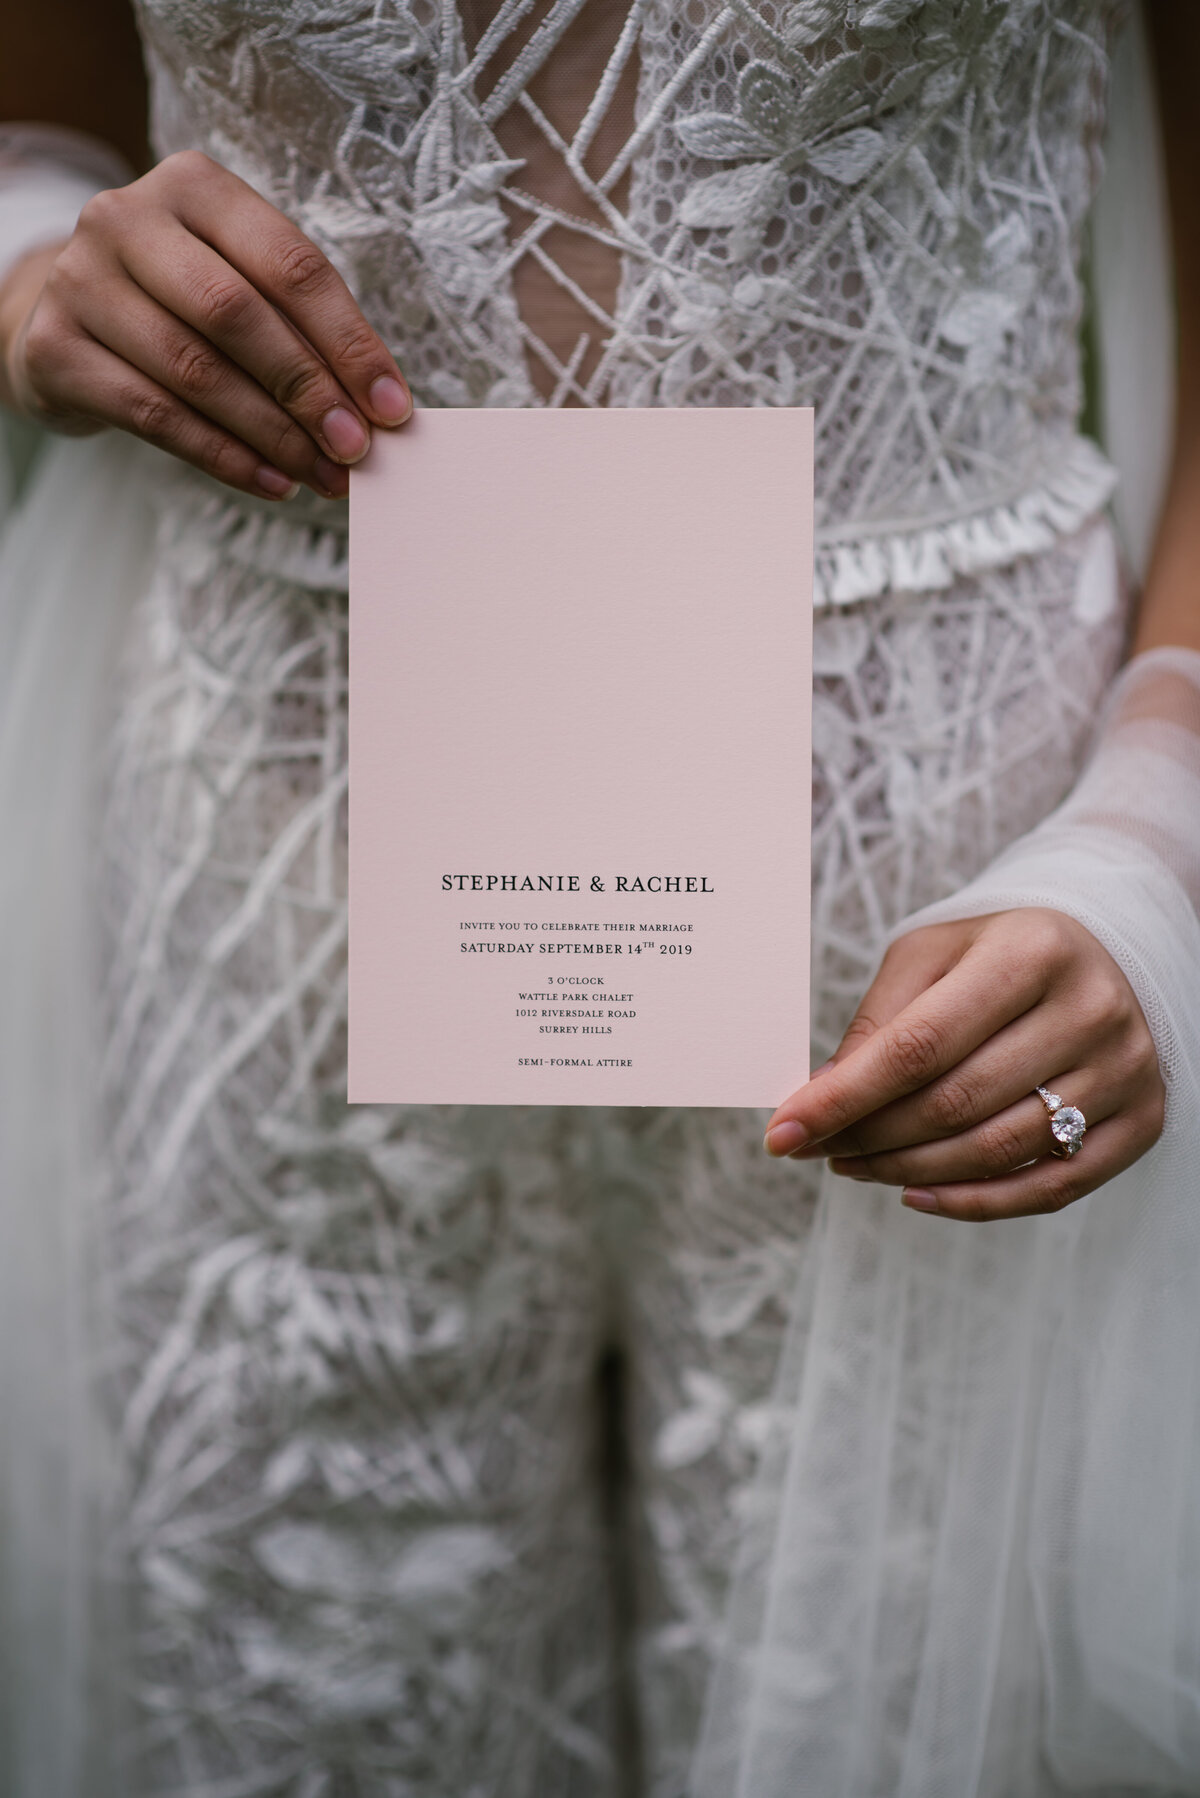 Modern minimalist pink wedding invitation with clean design